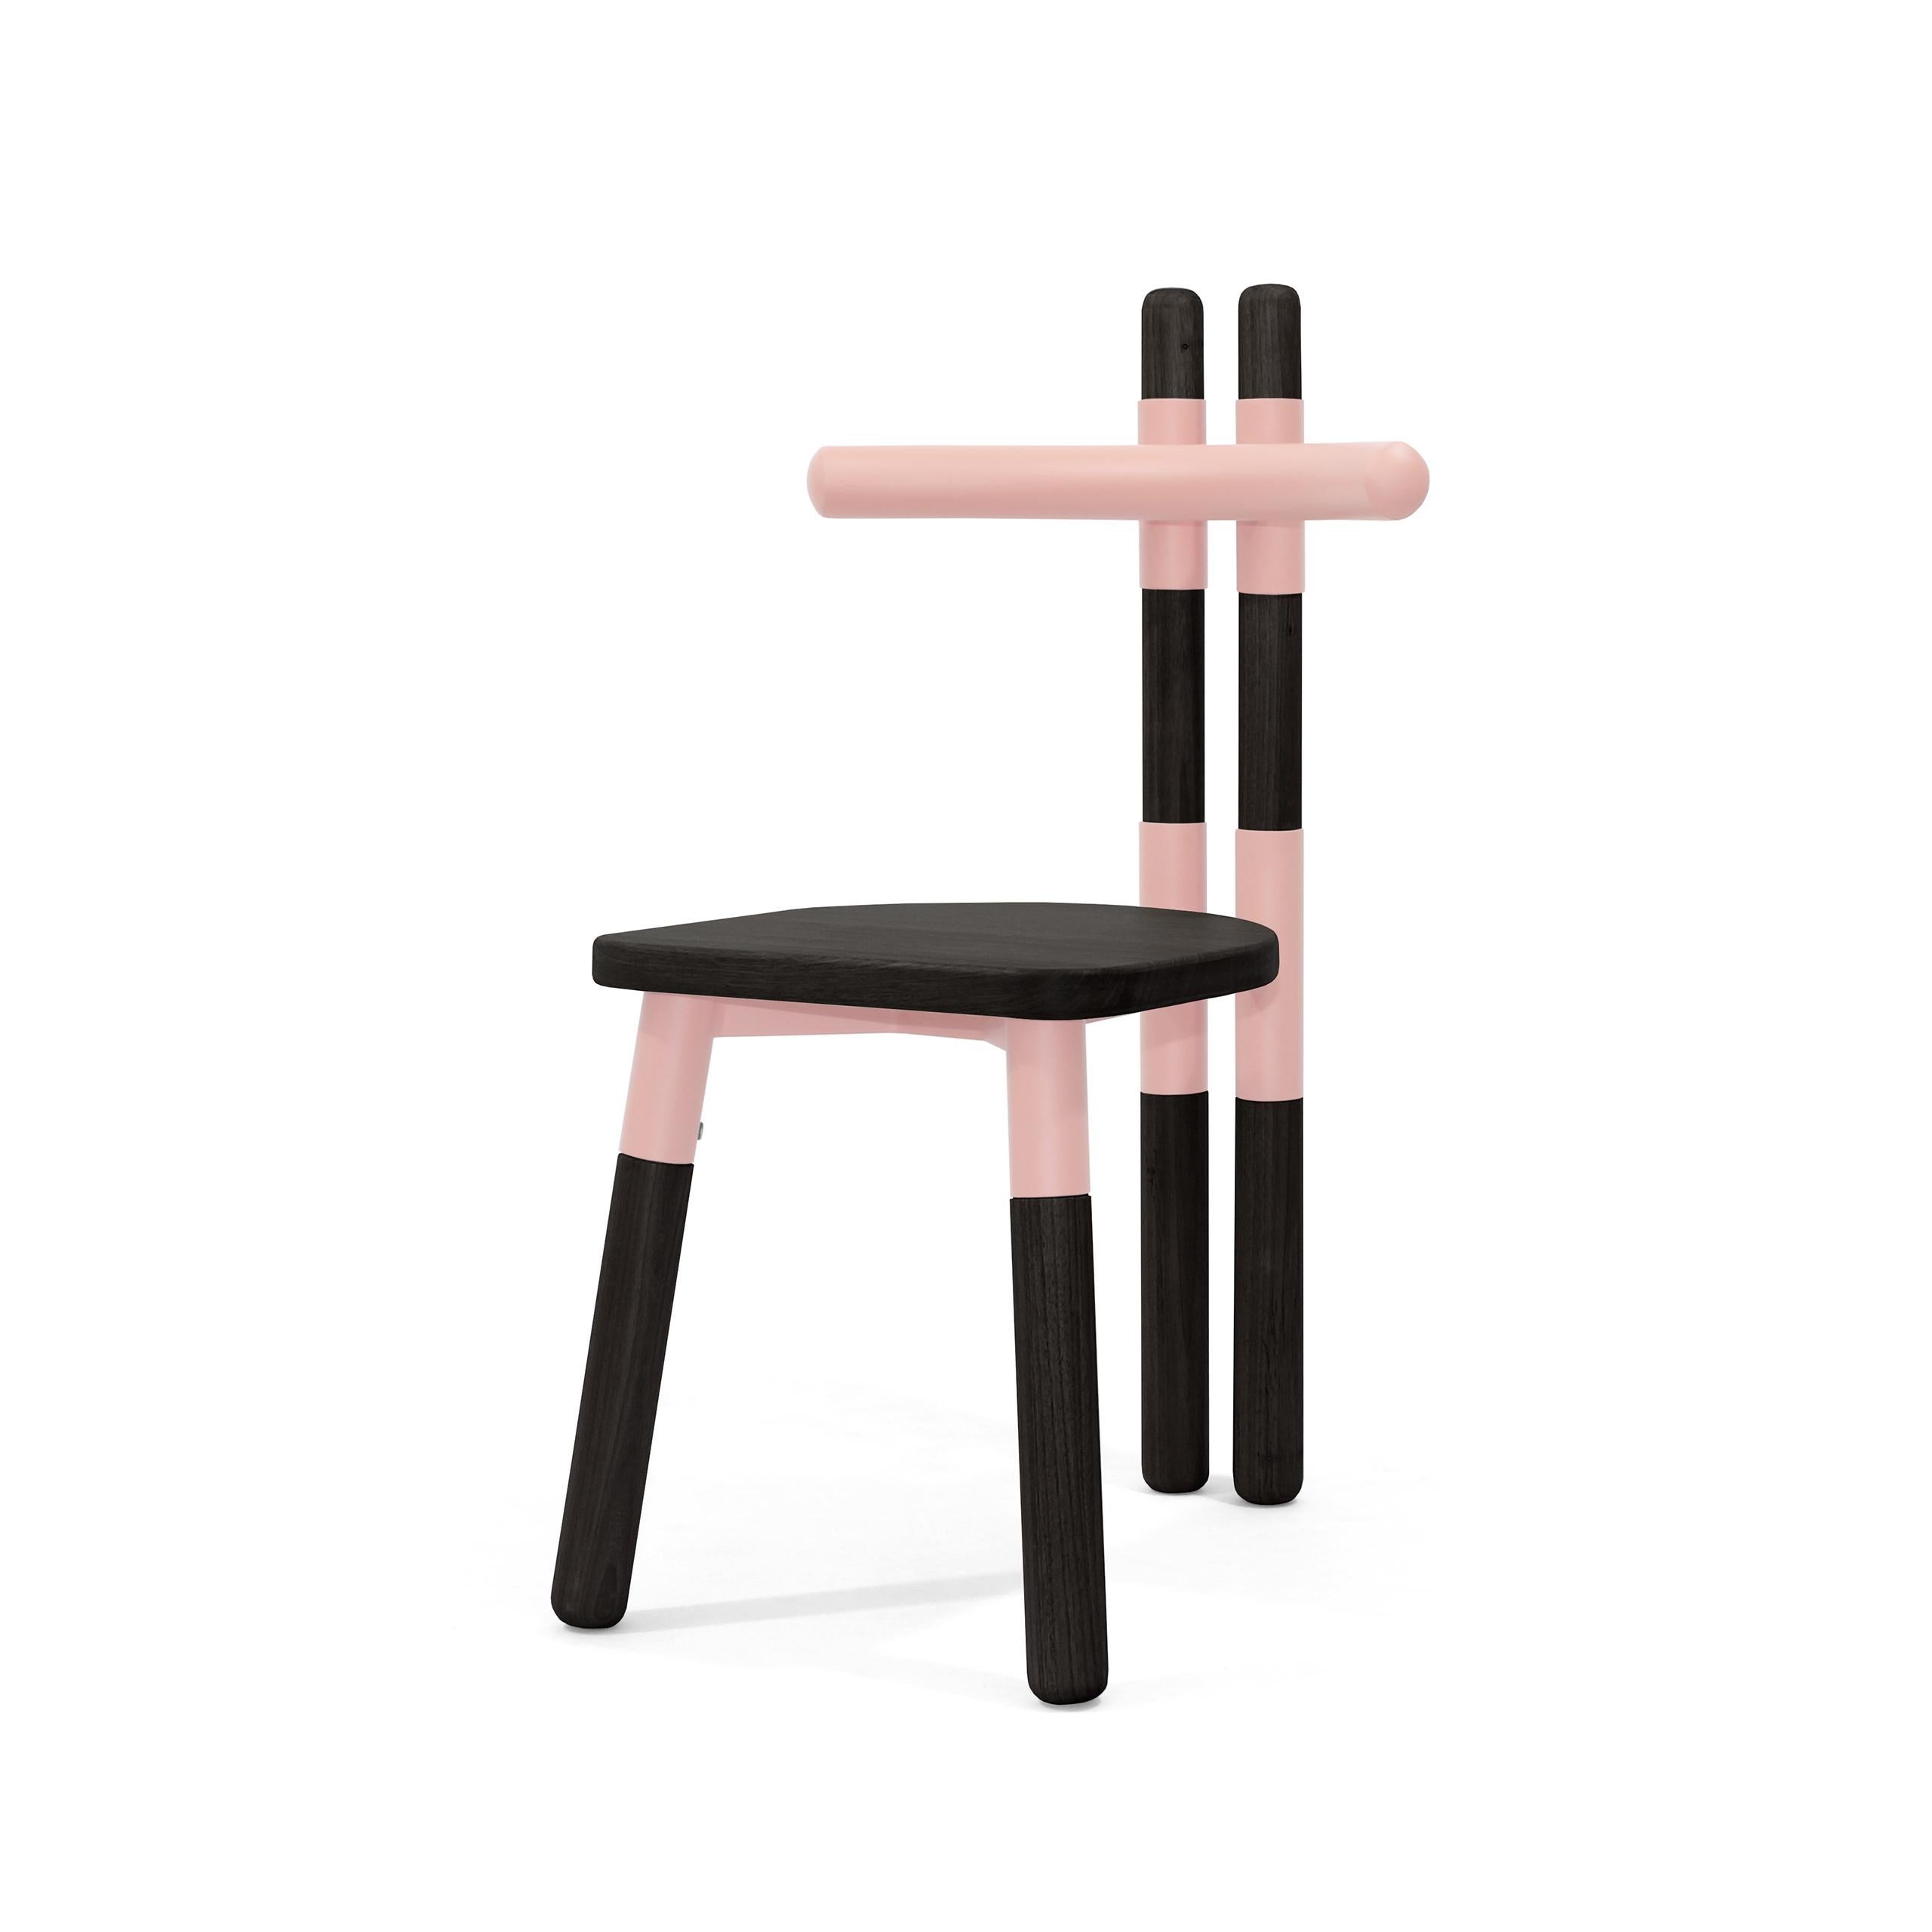 Der Stuhl PK12 ist von den Holzbindern inspiriert, die bei der Konstruktion von Dächern verwendet werden.
Die Stuhlmuffen beziehen sich auf das 